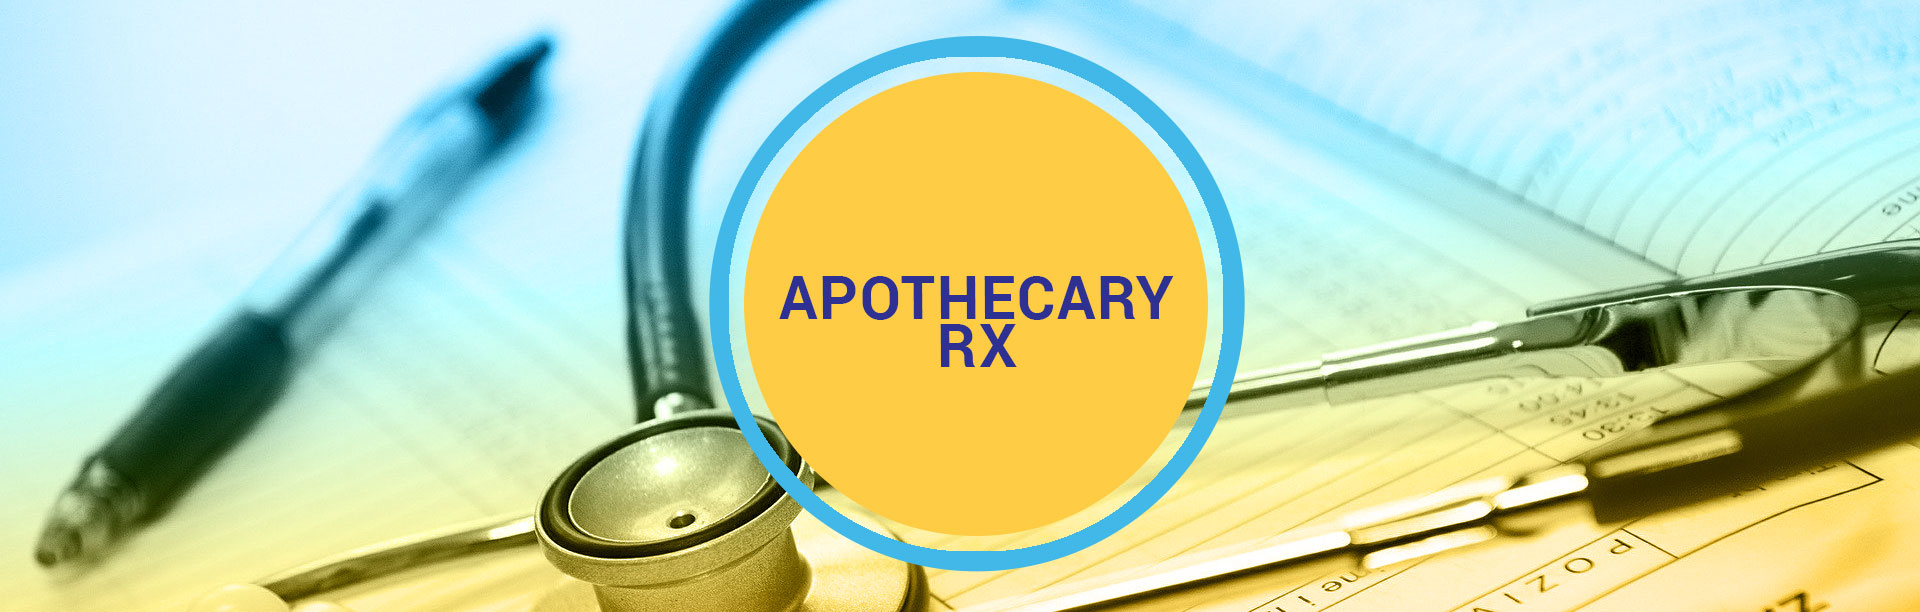 apothecaryrx-headers